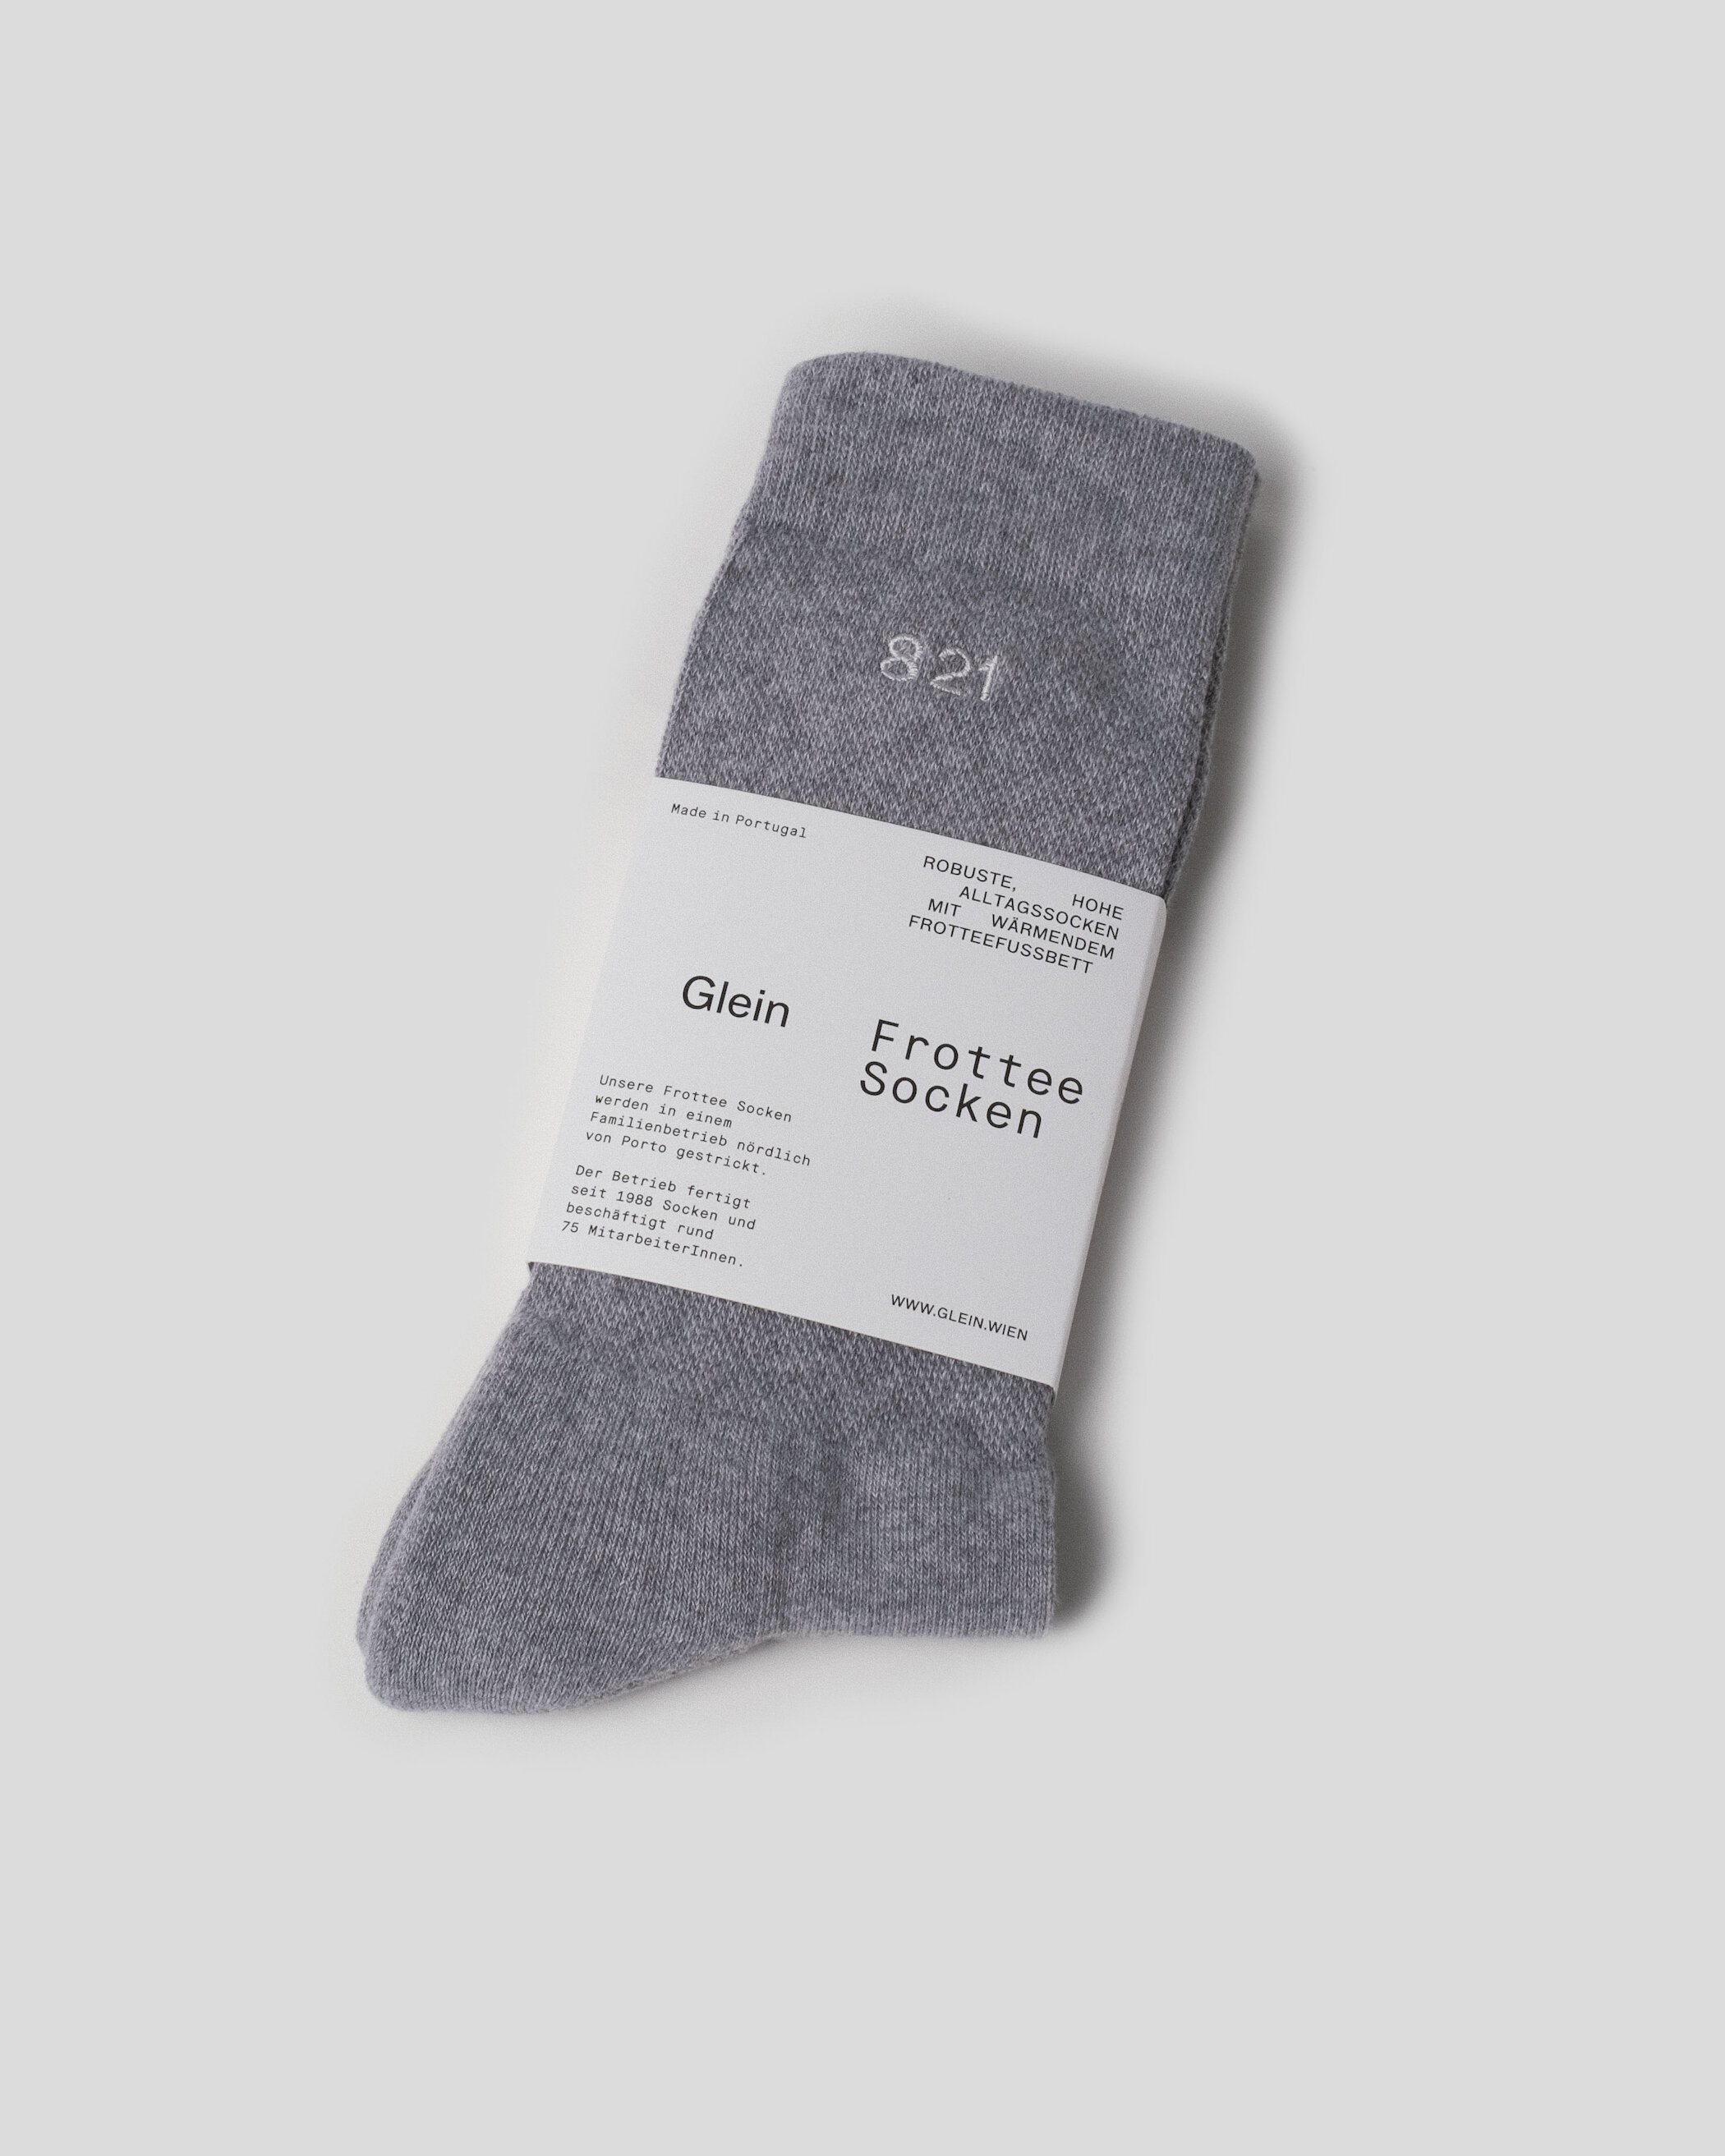 Glein - Frottee Socken - grey